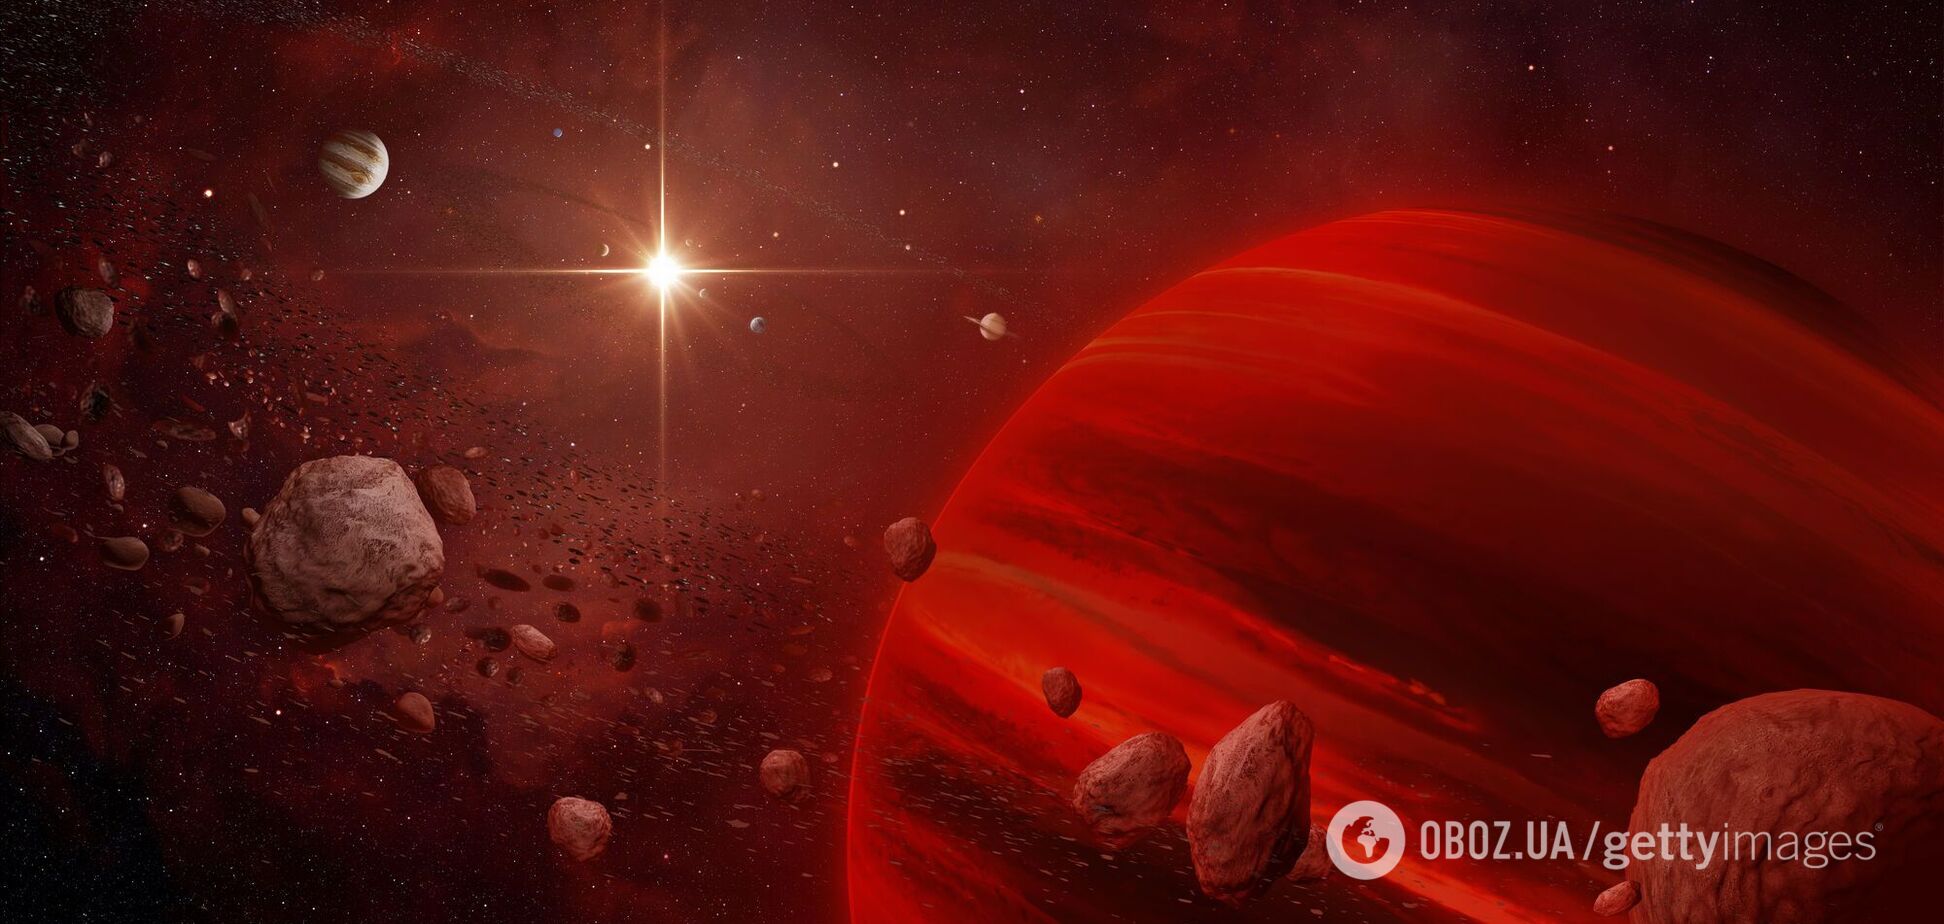 Исследователи обнаружили в звездах редкие сверхтяжелые элементы, которые не могут существовать на Земле